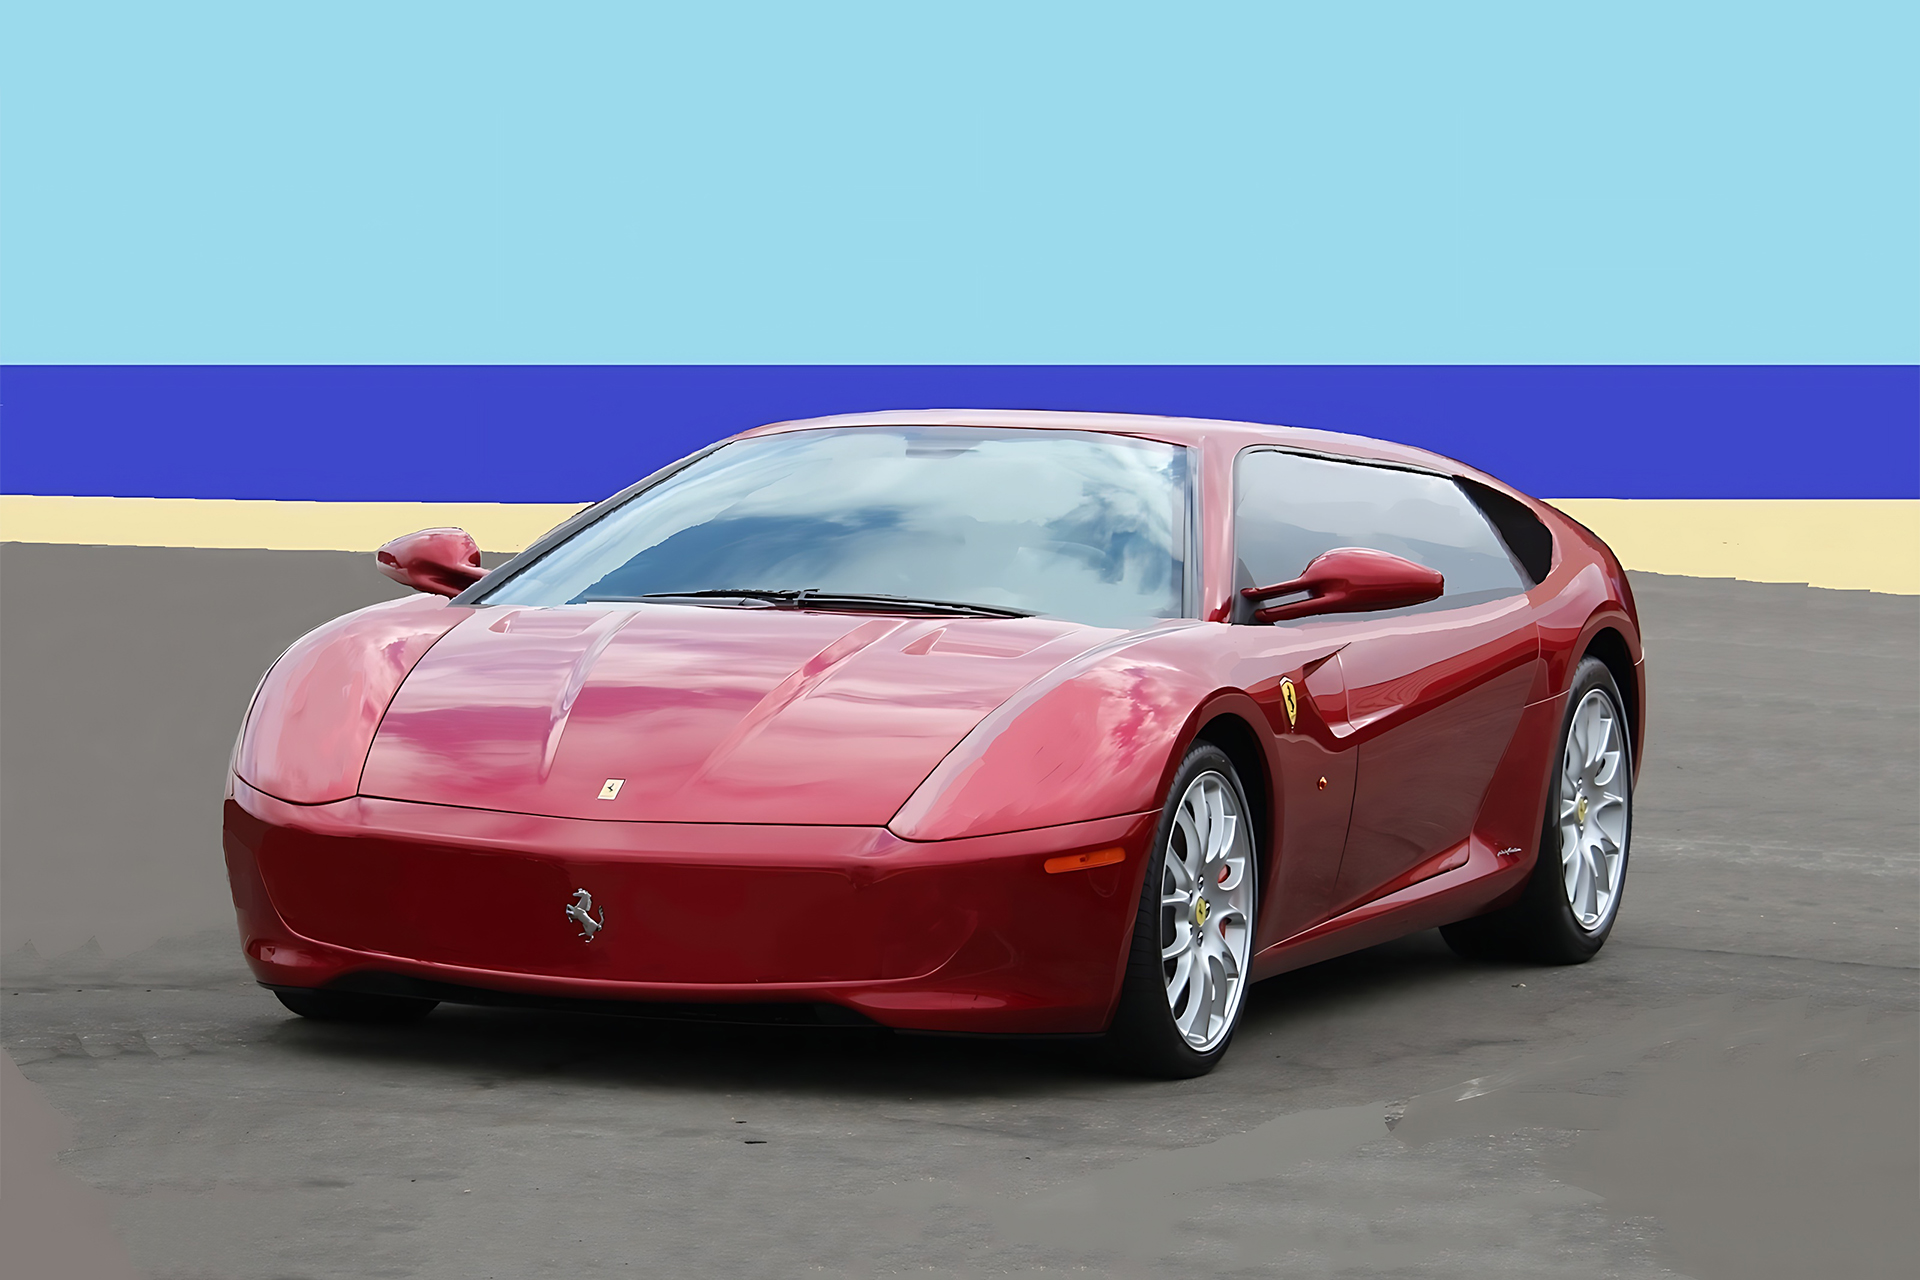 Ferrari vai lançar seu primeiro carro 100% elétrico com som digitalizado para substituir o ronco do motor a combustão